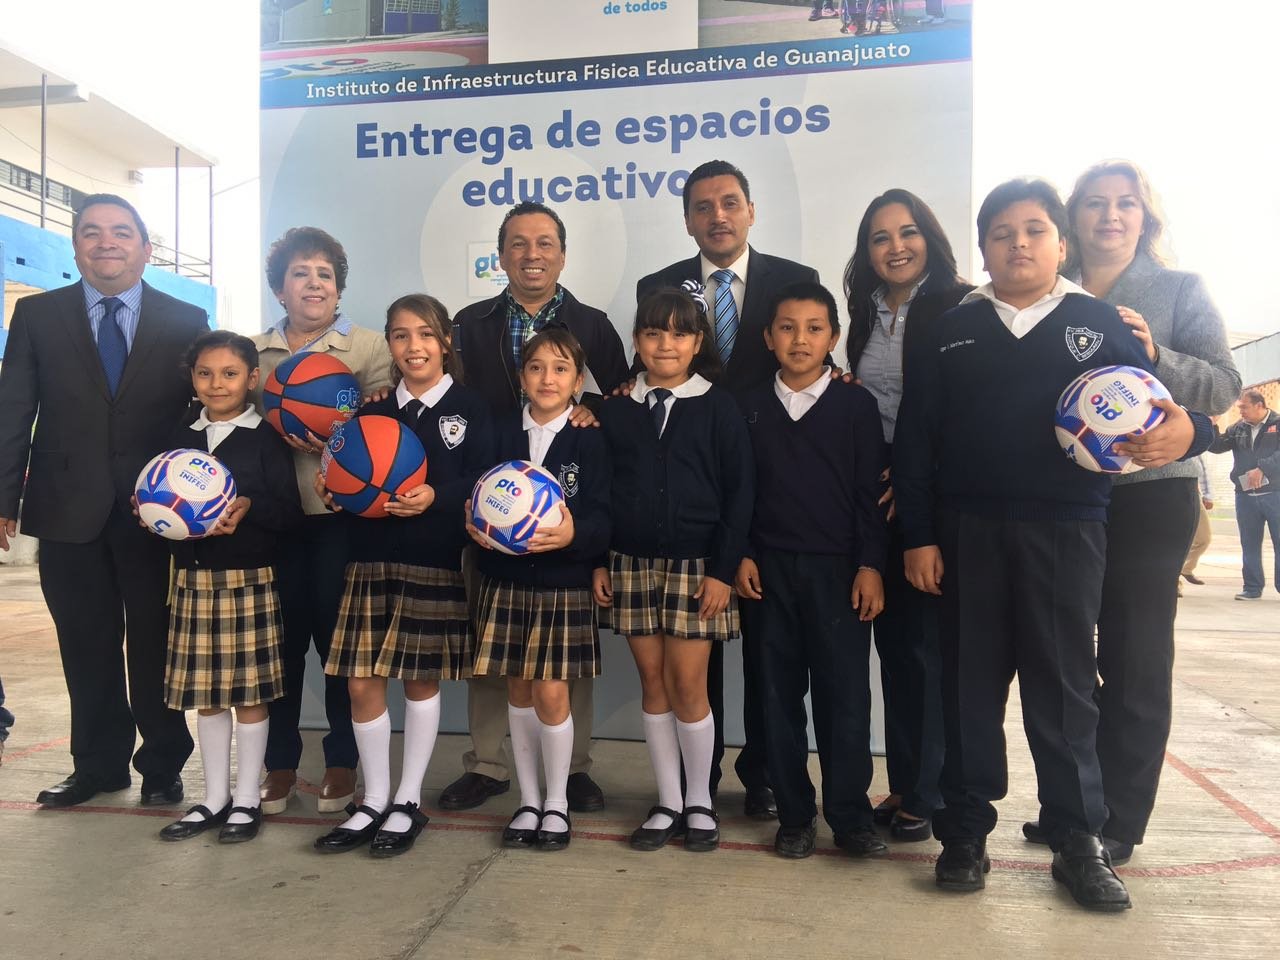 Se inauguro el techado de las canchas de la escuela primaria Enrique C. Rebsamen y la secundaria María Fuentes Sandoval, donde se hizo una inversión total de dos millones 584 mil 833.68 pesos.